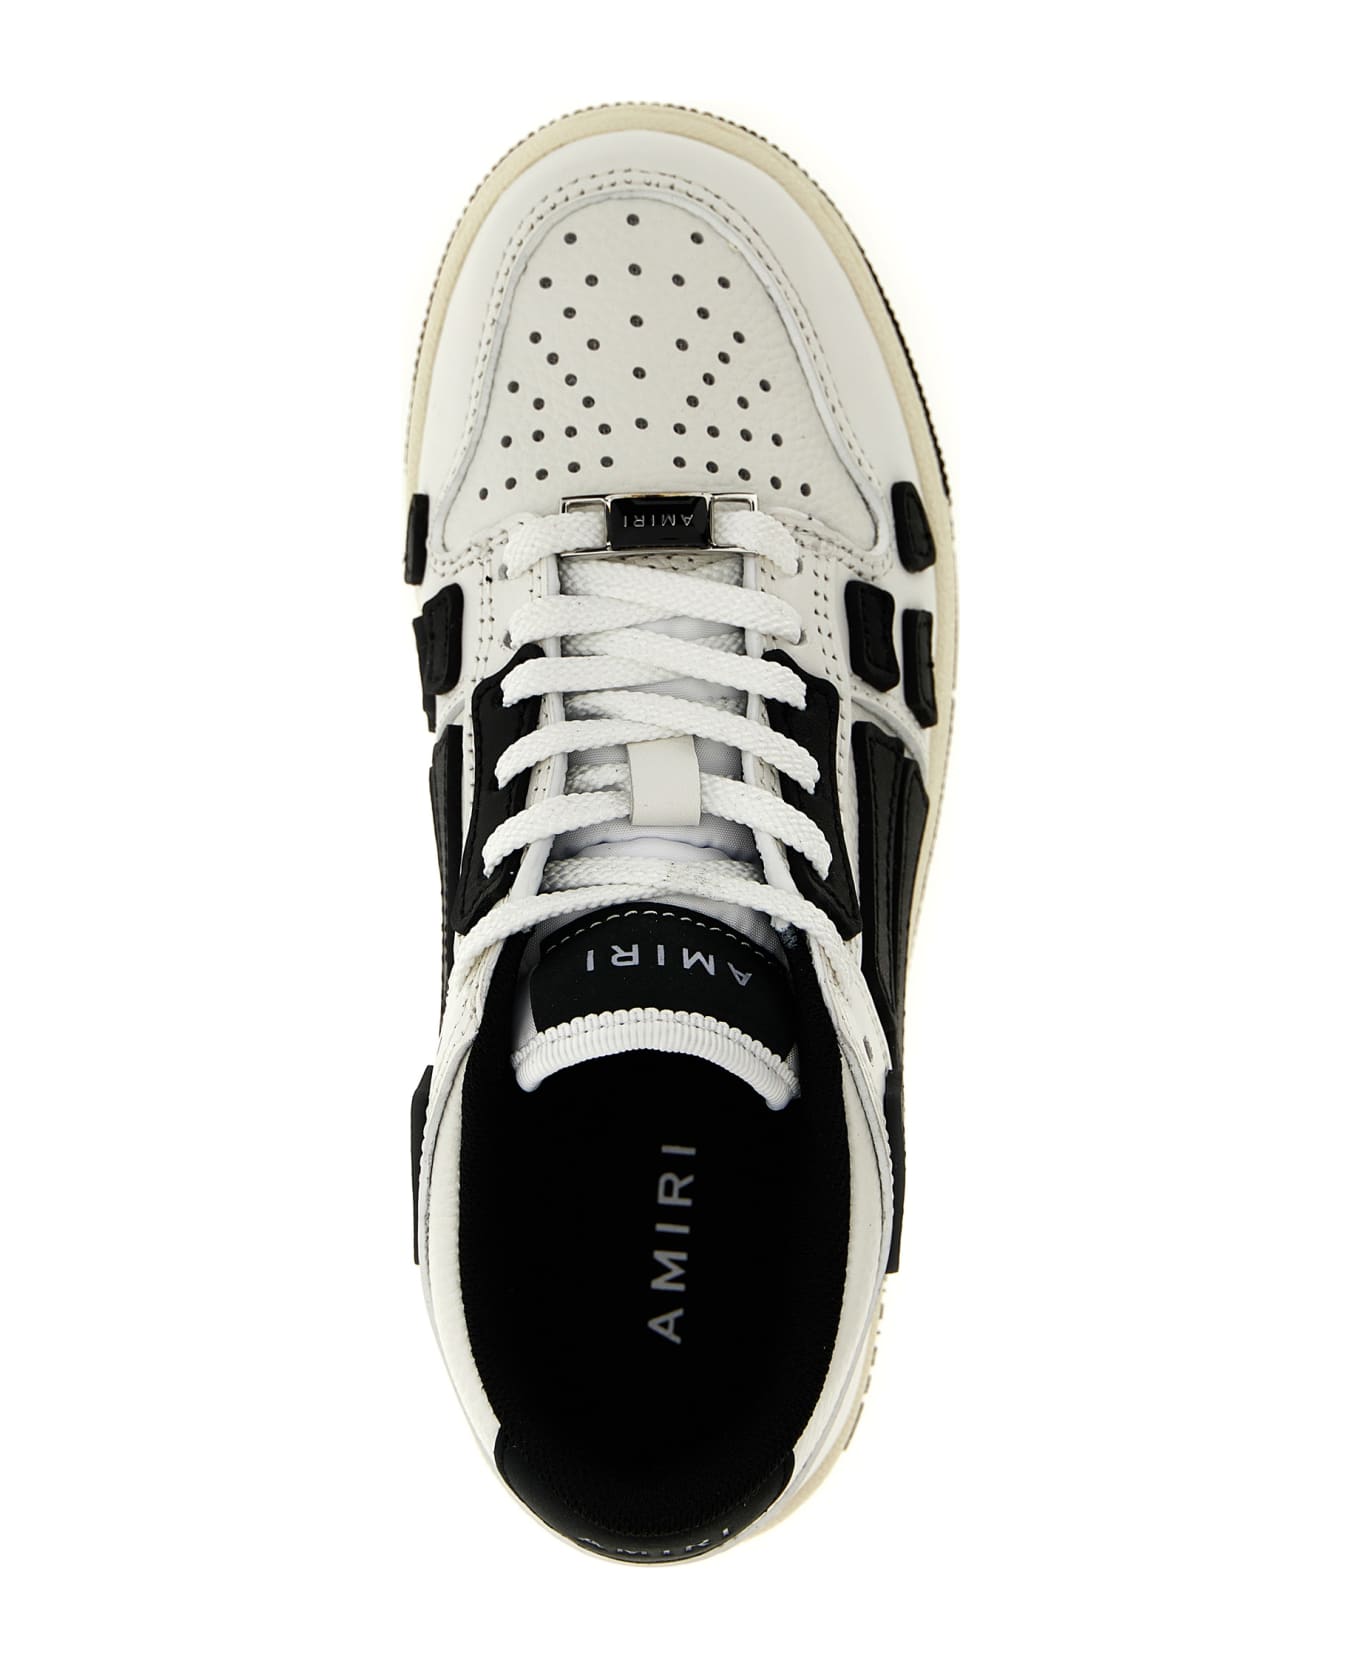 AMIRI 'asymmetric Low' Sneakers - White Black シューズ